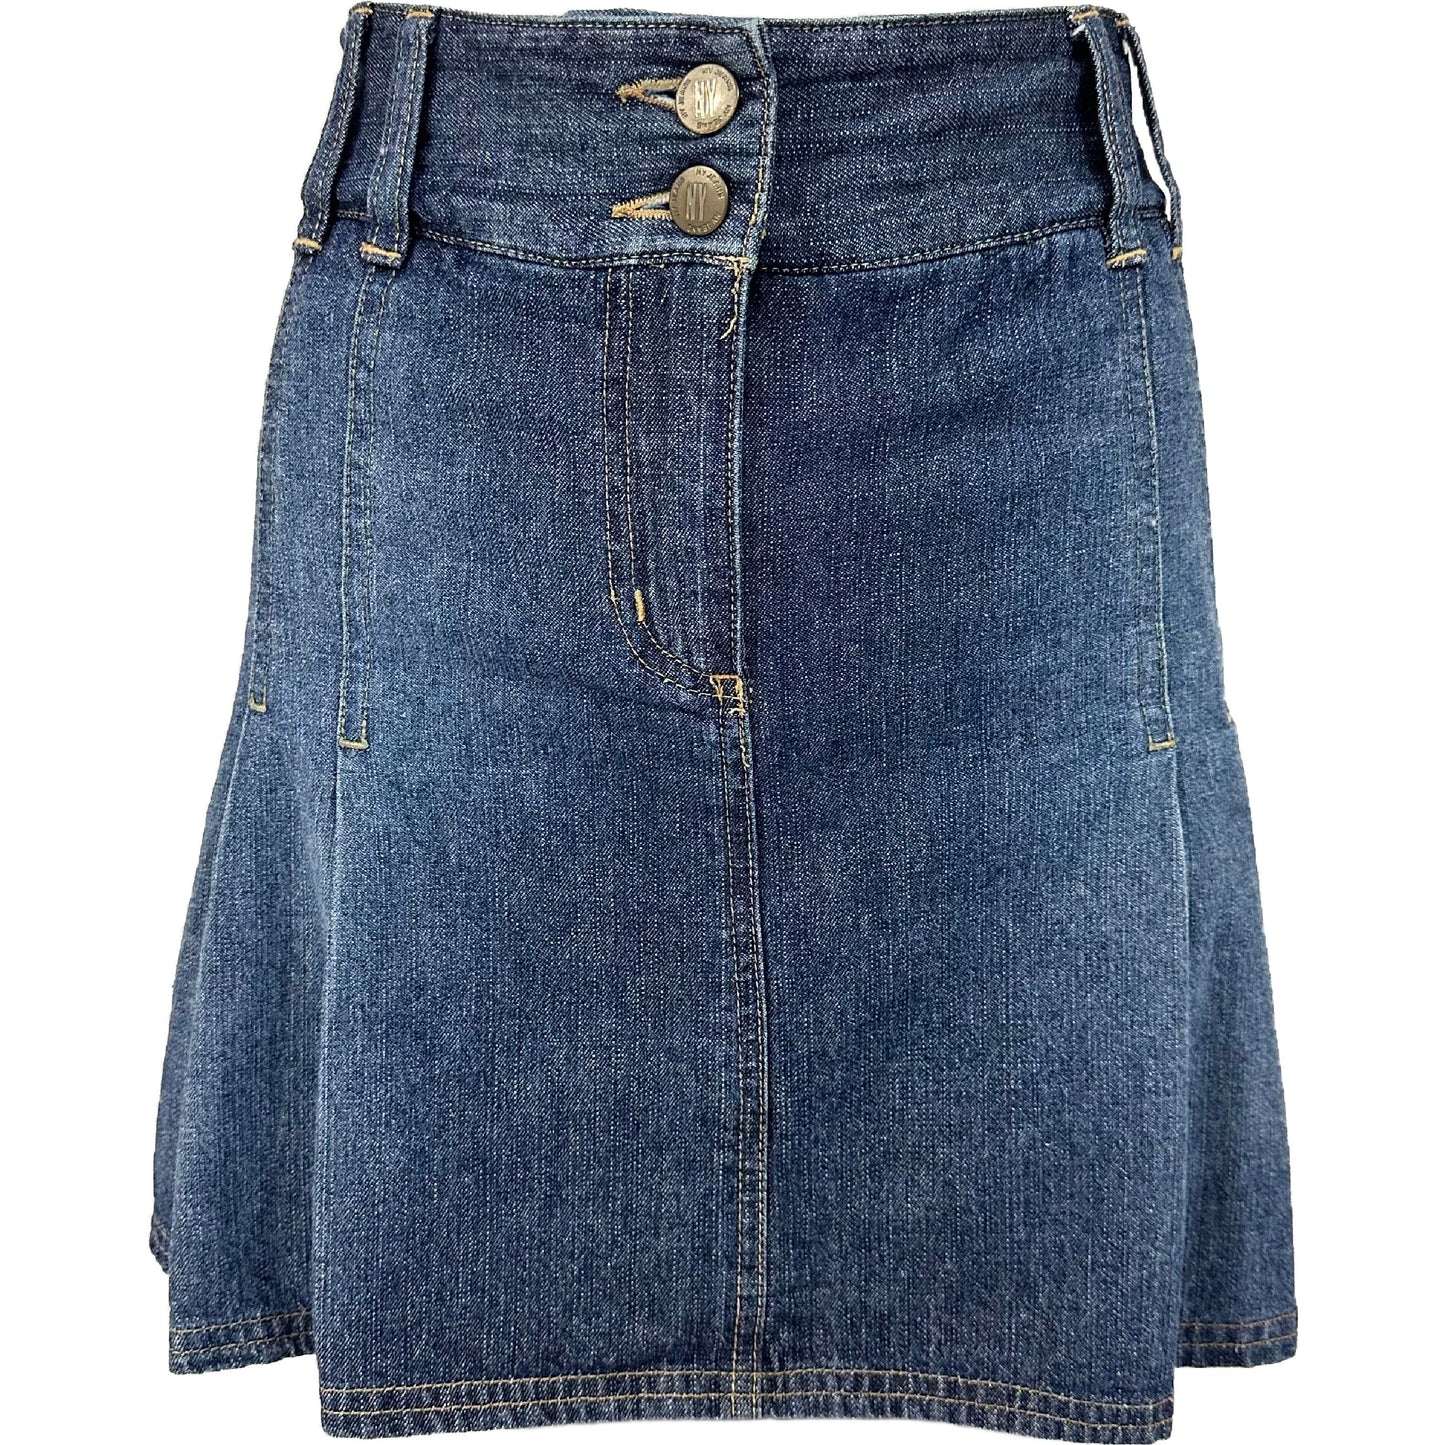 Vintage Y2K NY Jeans Pleated Mini Skirt Skort